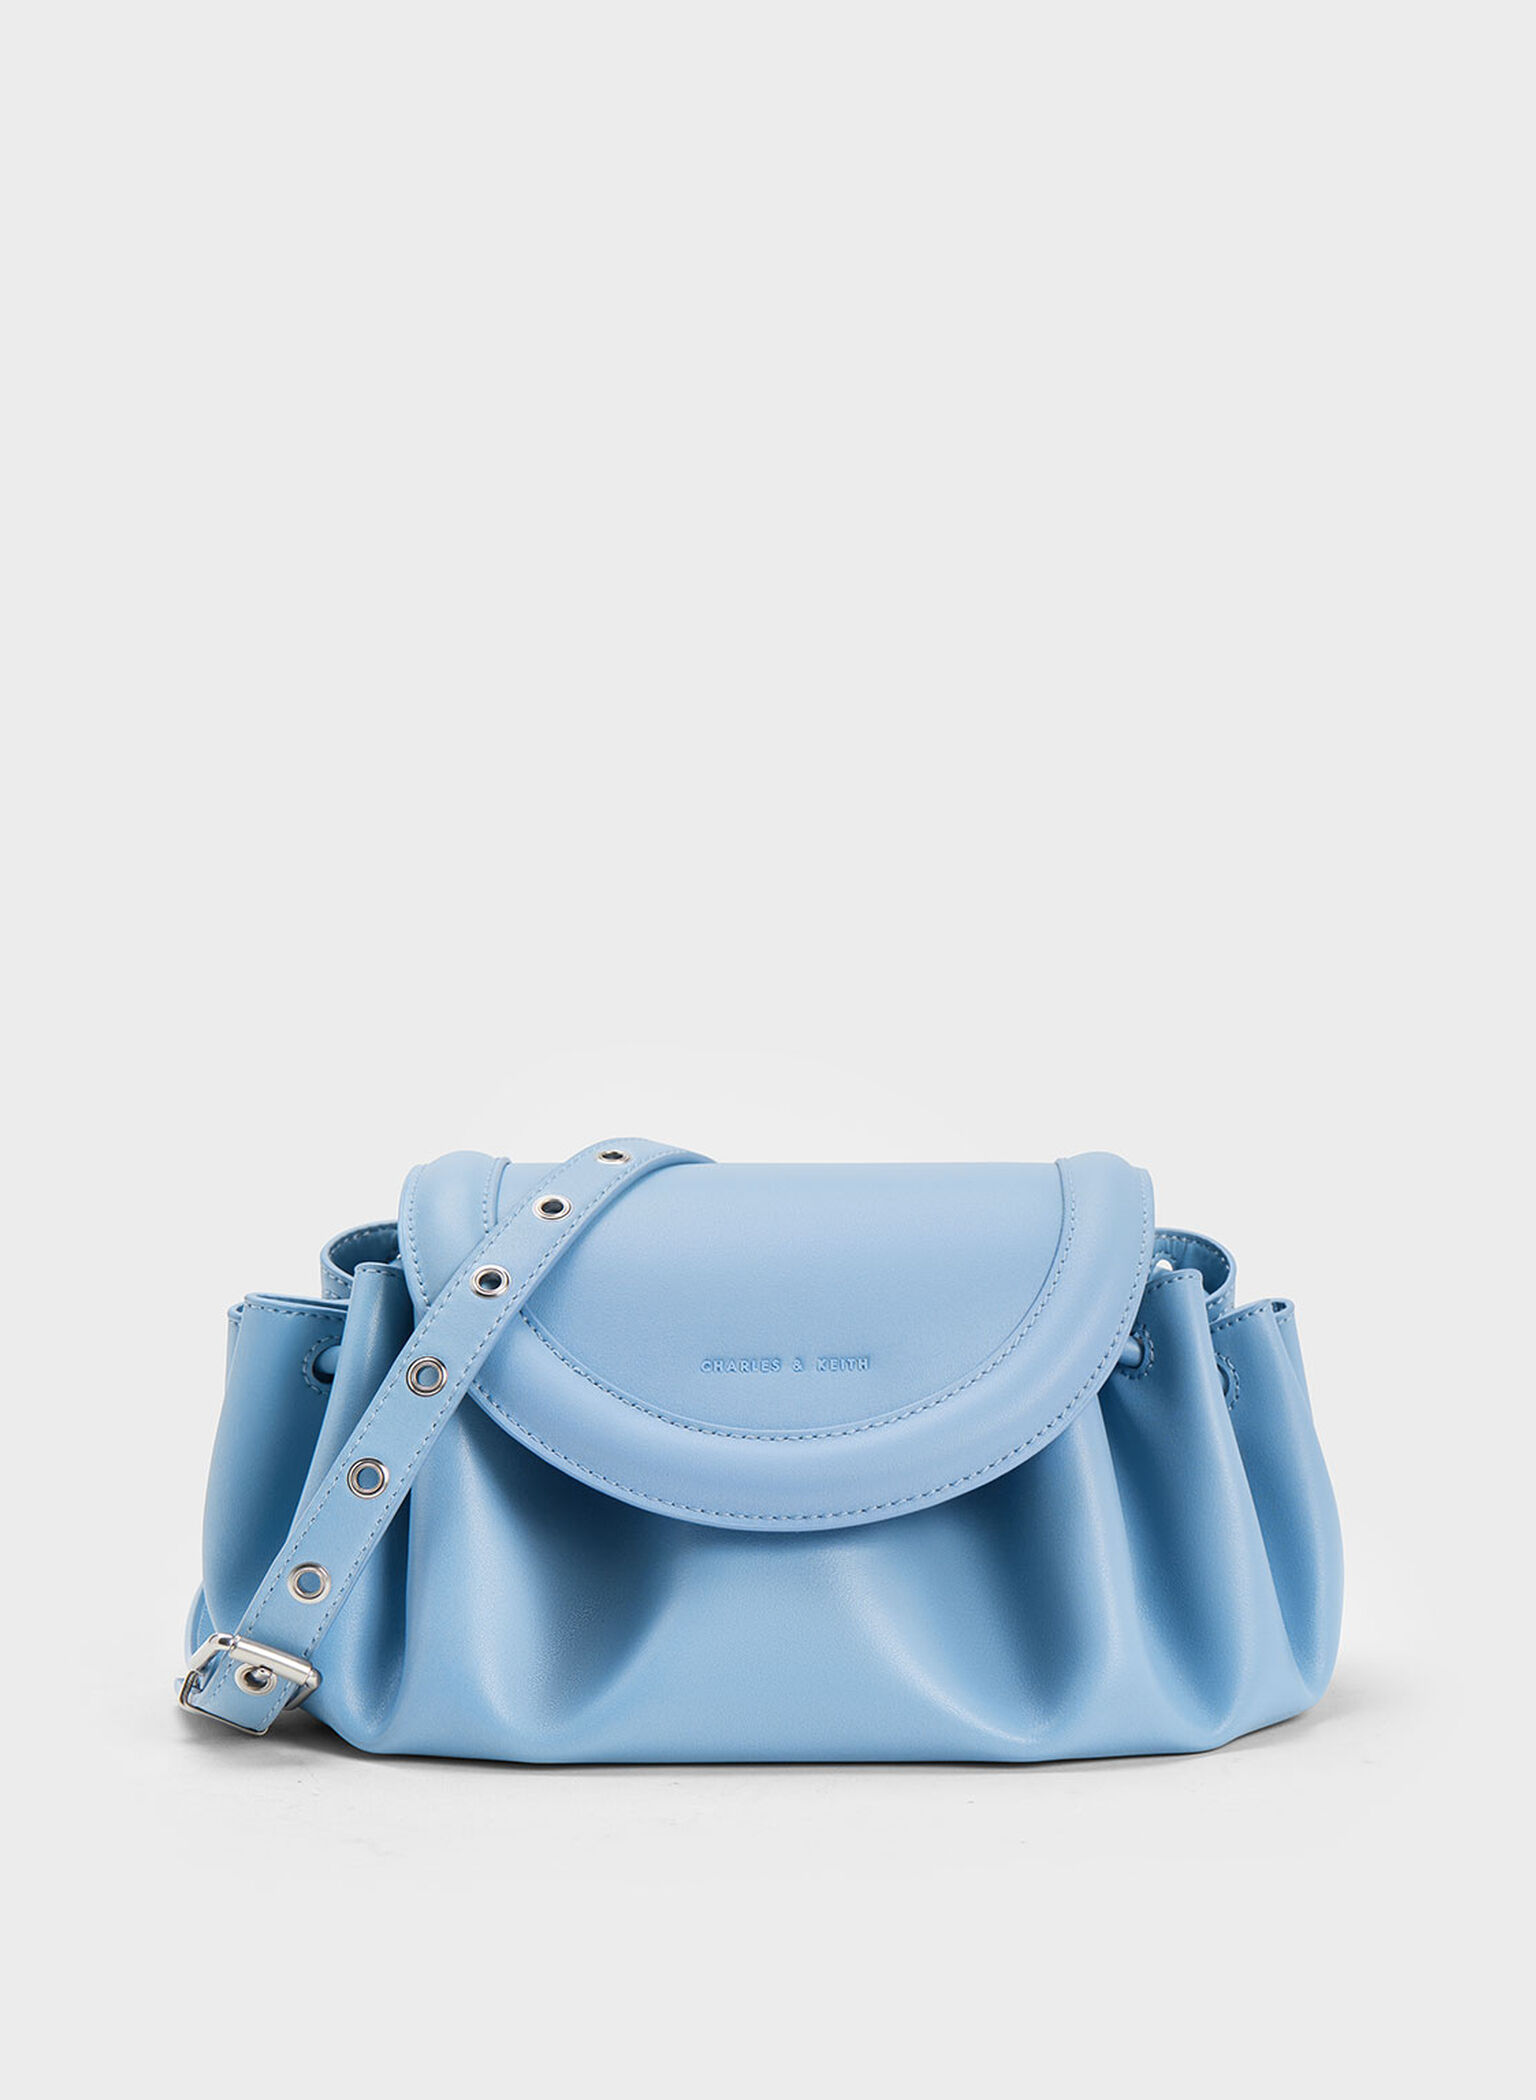 Handbag Shoulder Strap Adjustable - 25 mm x 130 cm